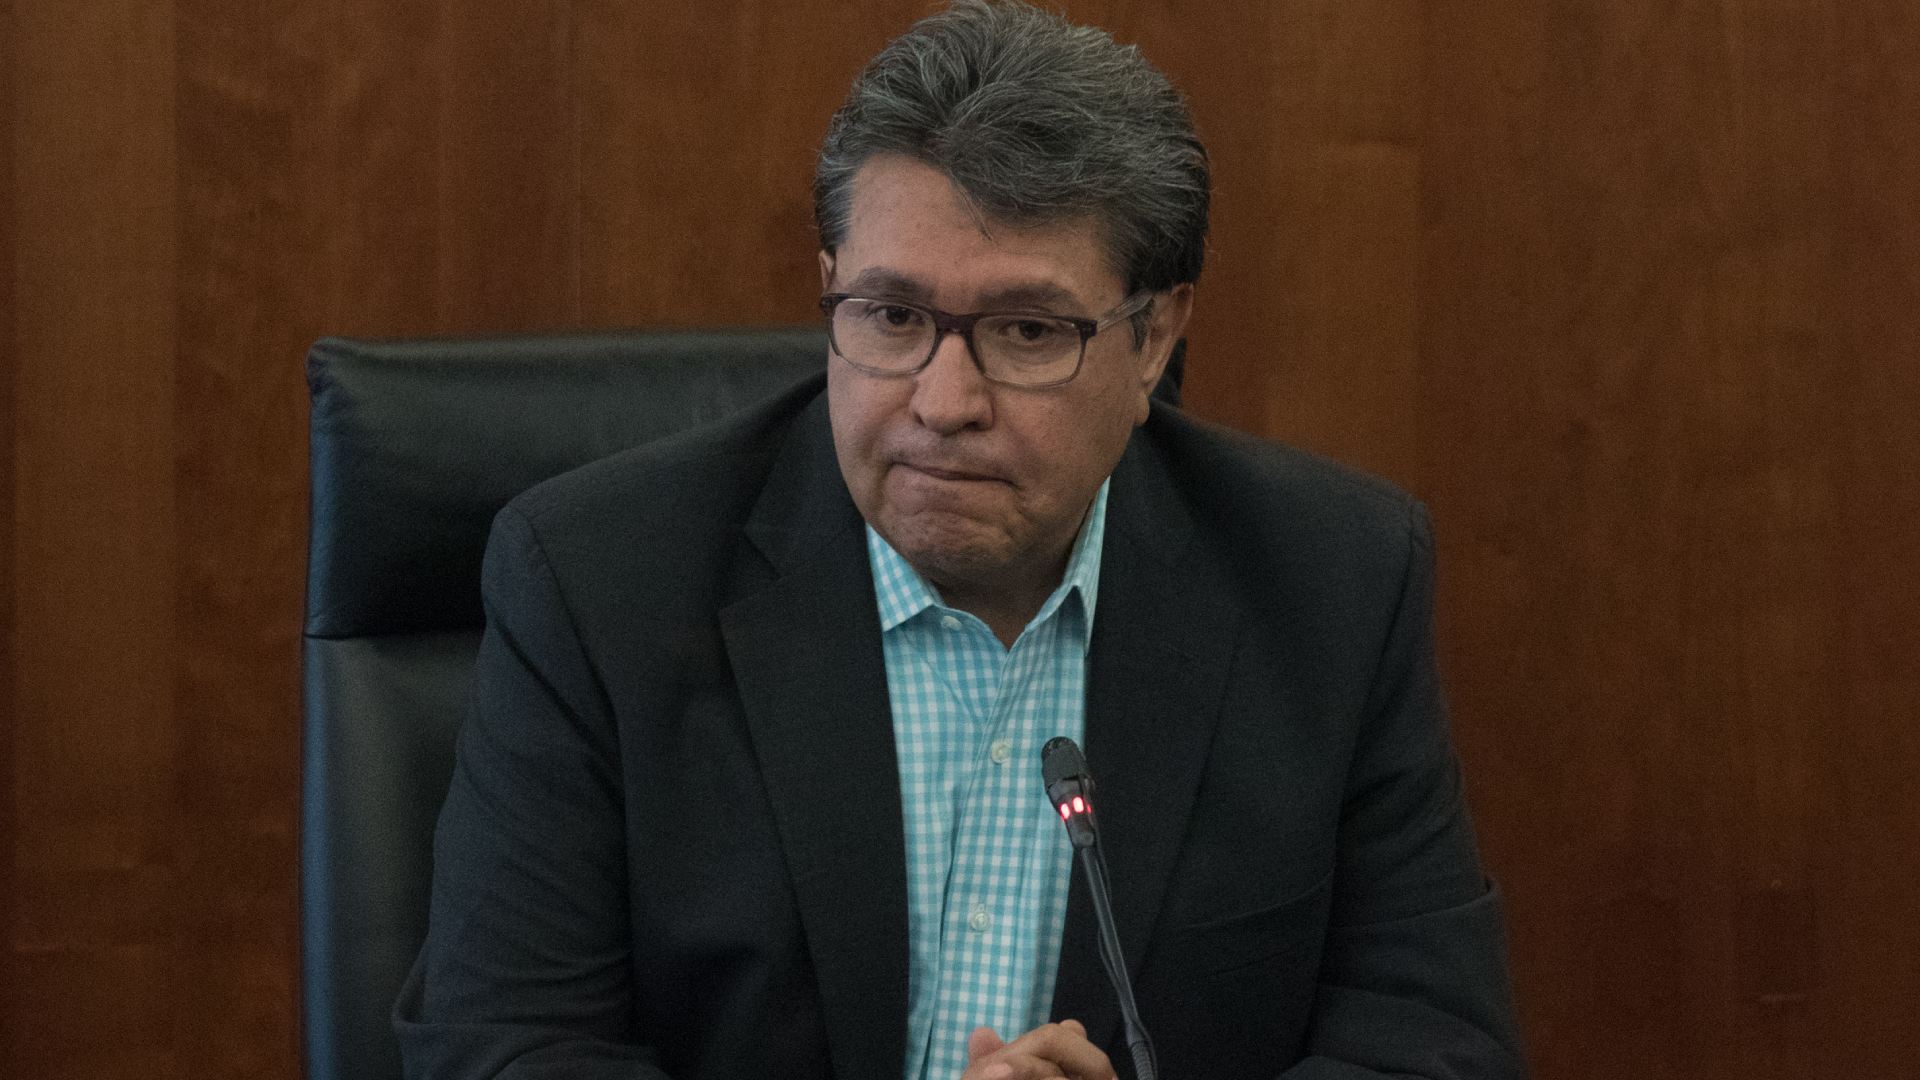 Javier Lozano tundió a Ricardo Monreal por pedir tregua en las elecciones de Tamaulipas: “¿Hablamos a lo tarugo?”